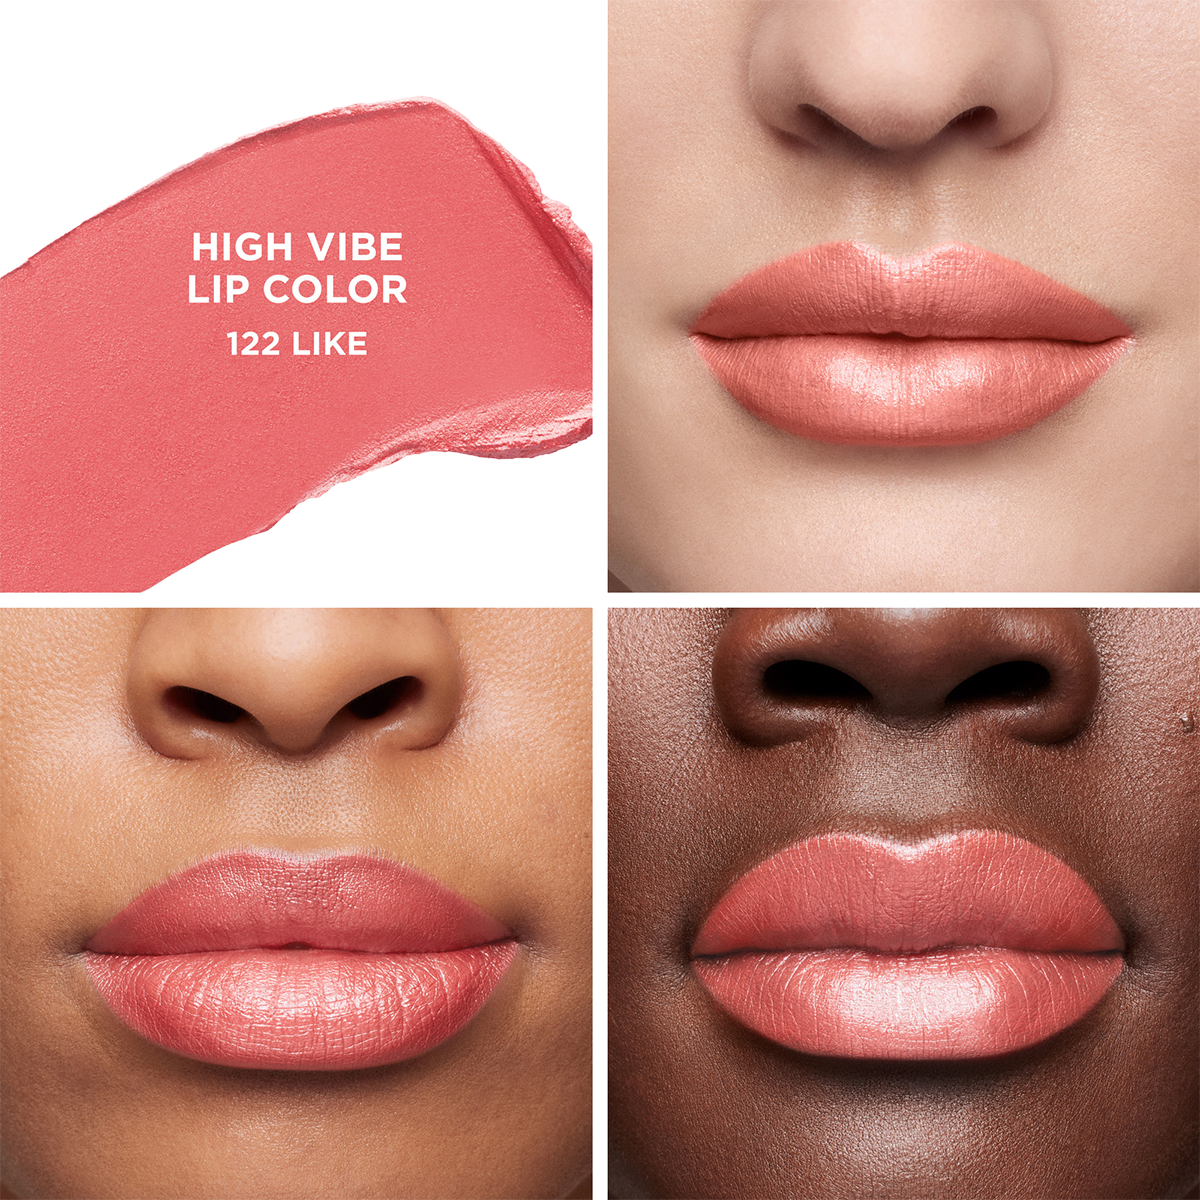 Laura Mercier - High Vibe Lip Color